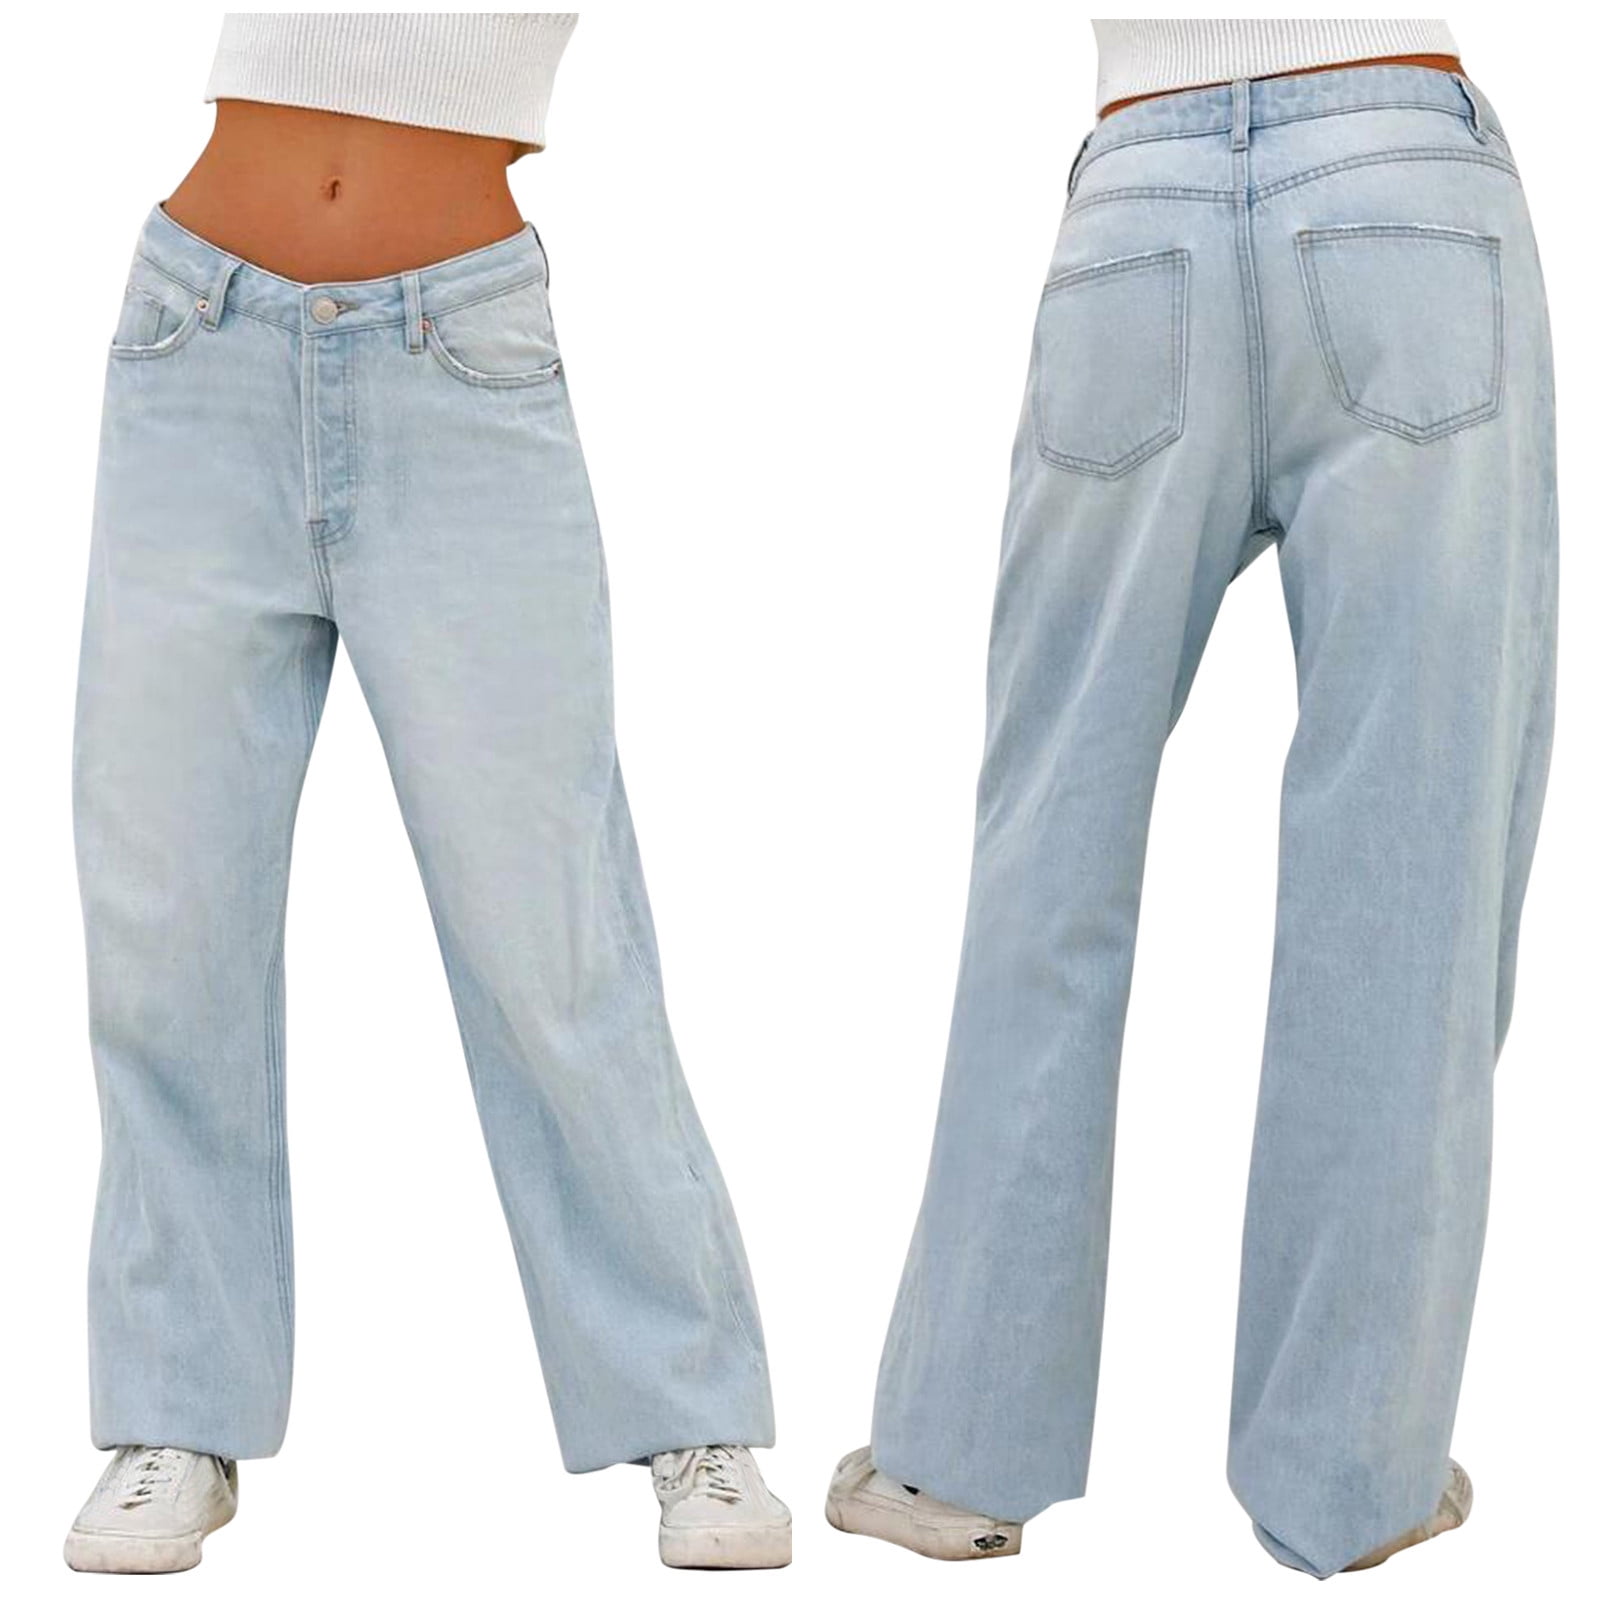 Labakihah jeans for women Women Mopping Denim Wide Leg Pants Loose